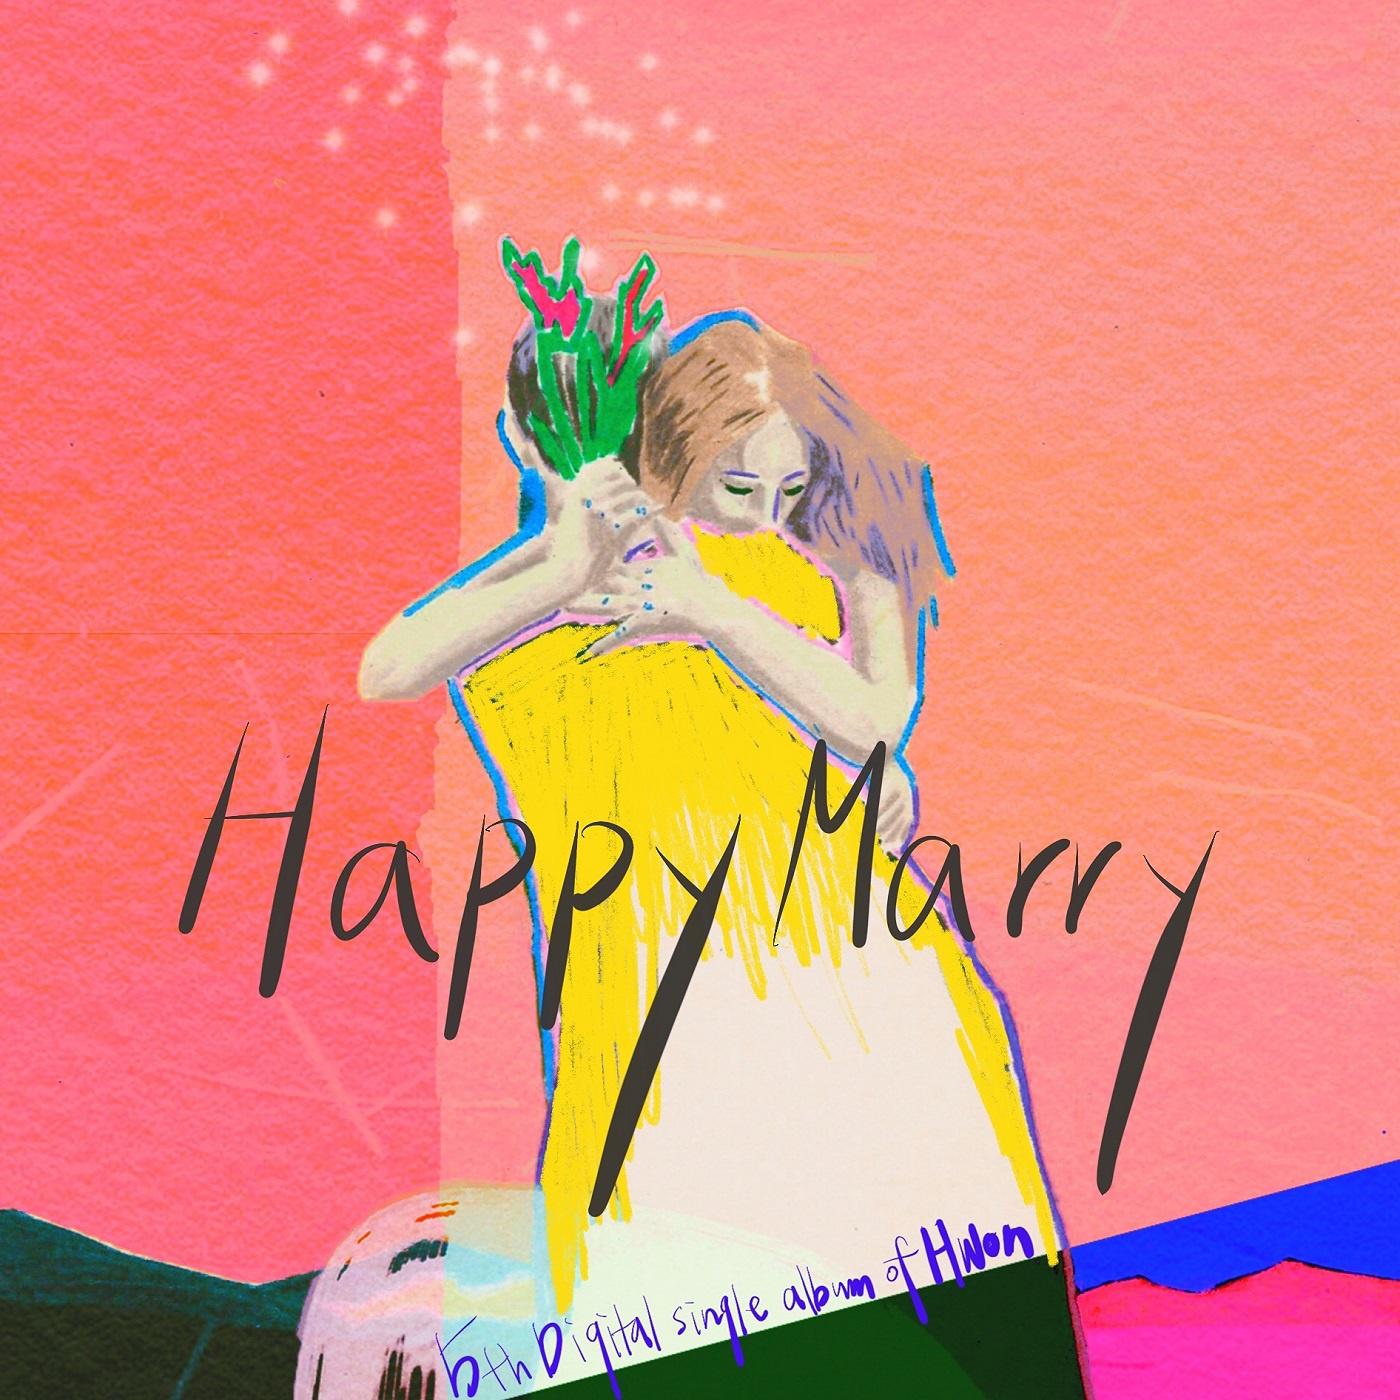 Happy Marry (Inst.)